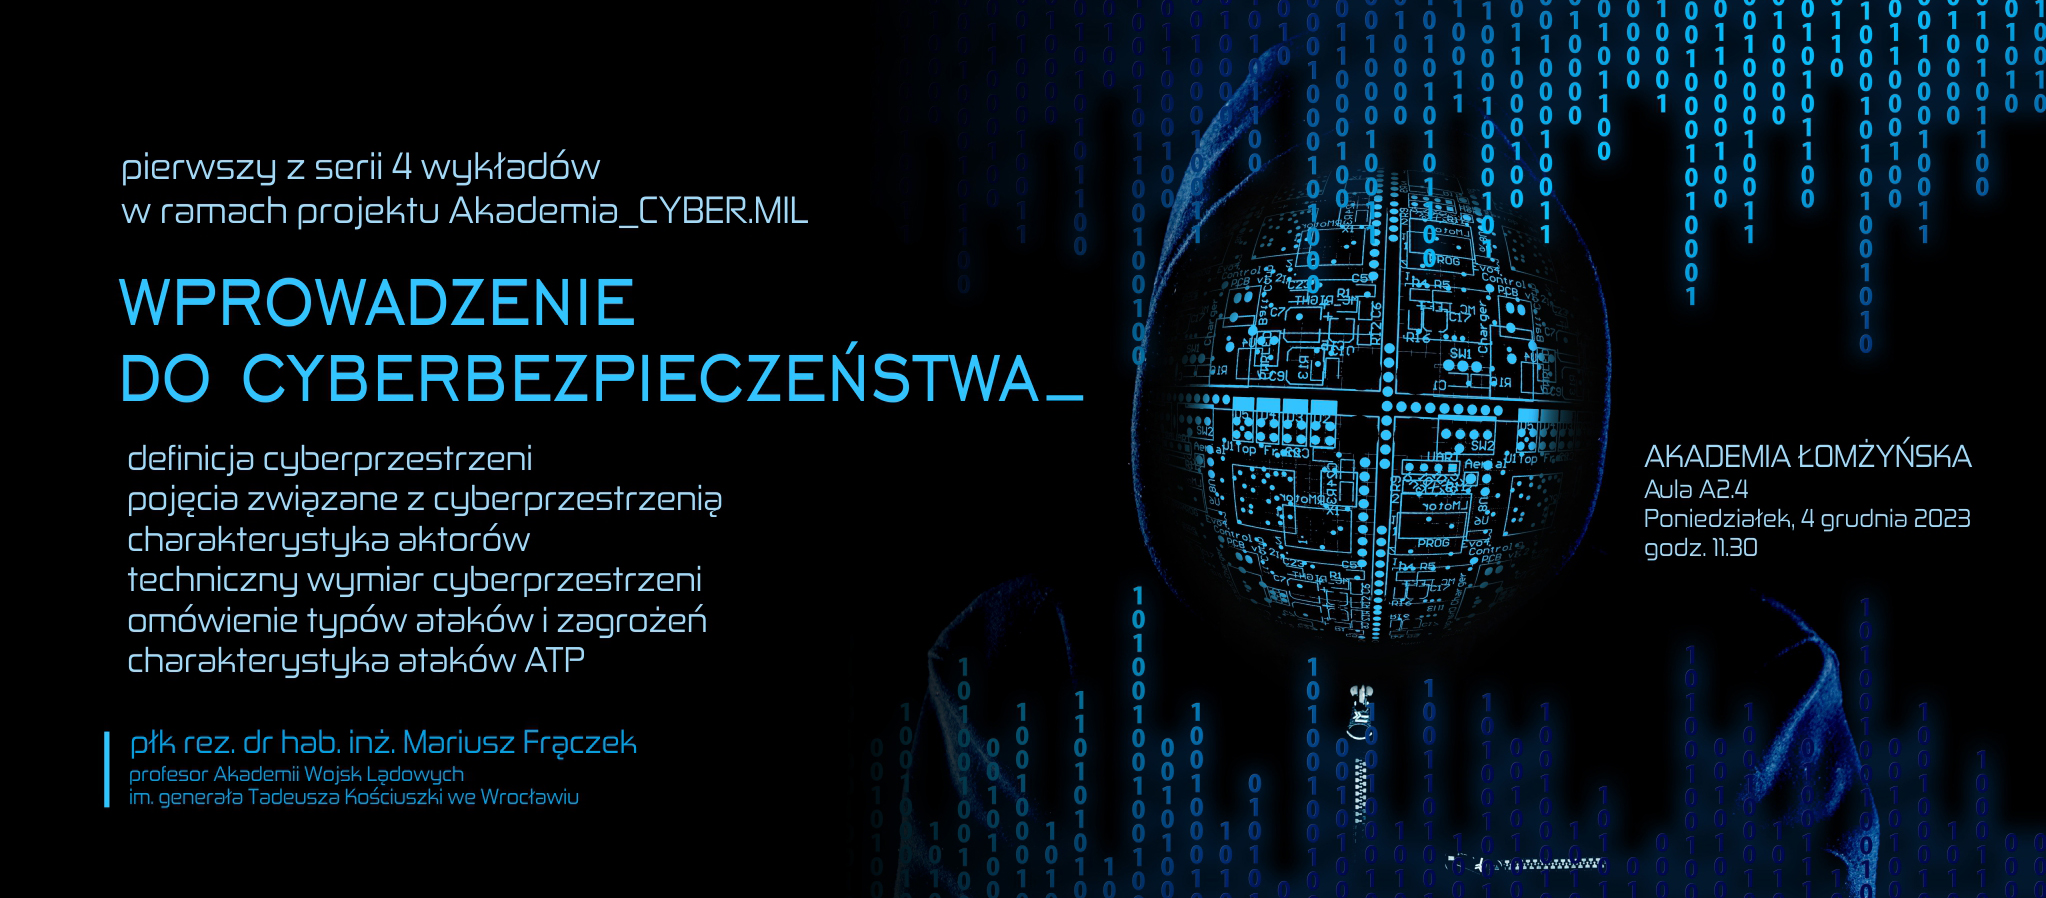 Baner reklamowy o wykładach z cyberbezpieczeństwa